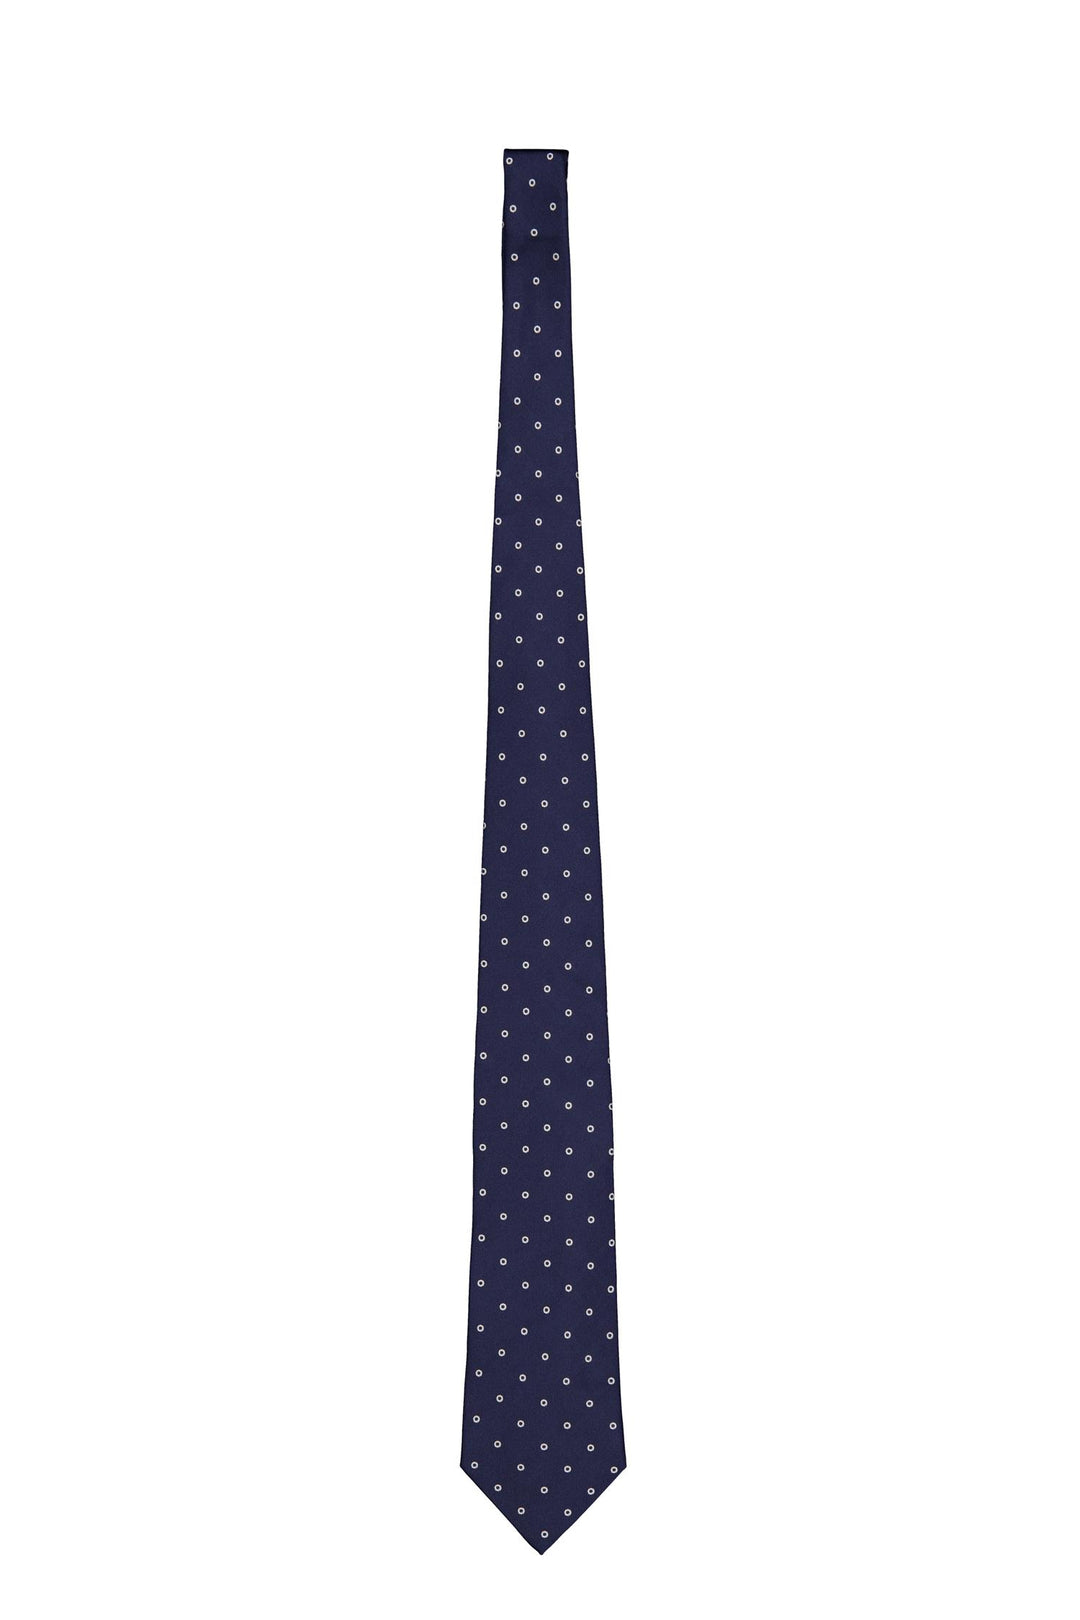 Silk Woven Tie Navy/White Dot-Slips-Bogartstore